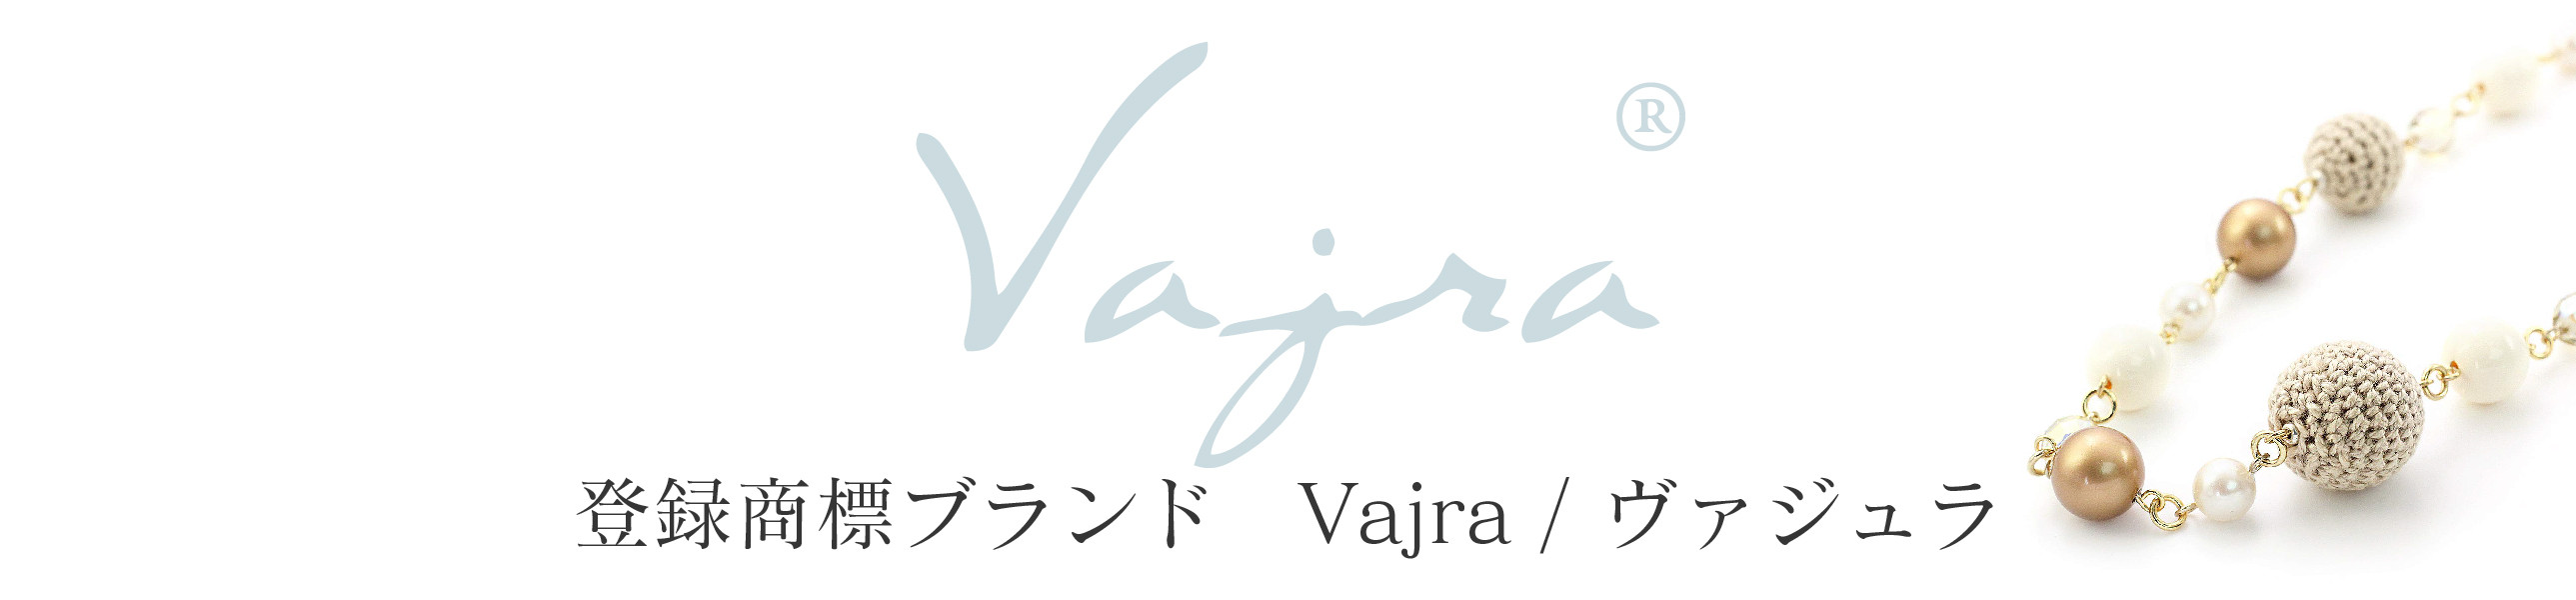 Vajra(登録商標)